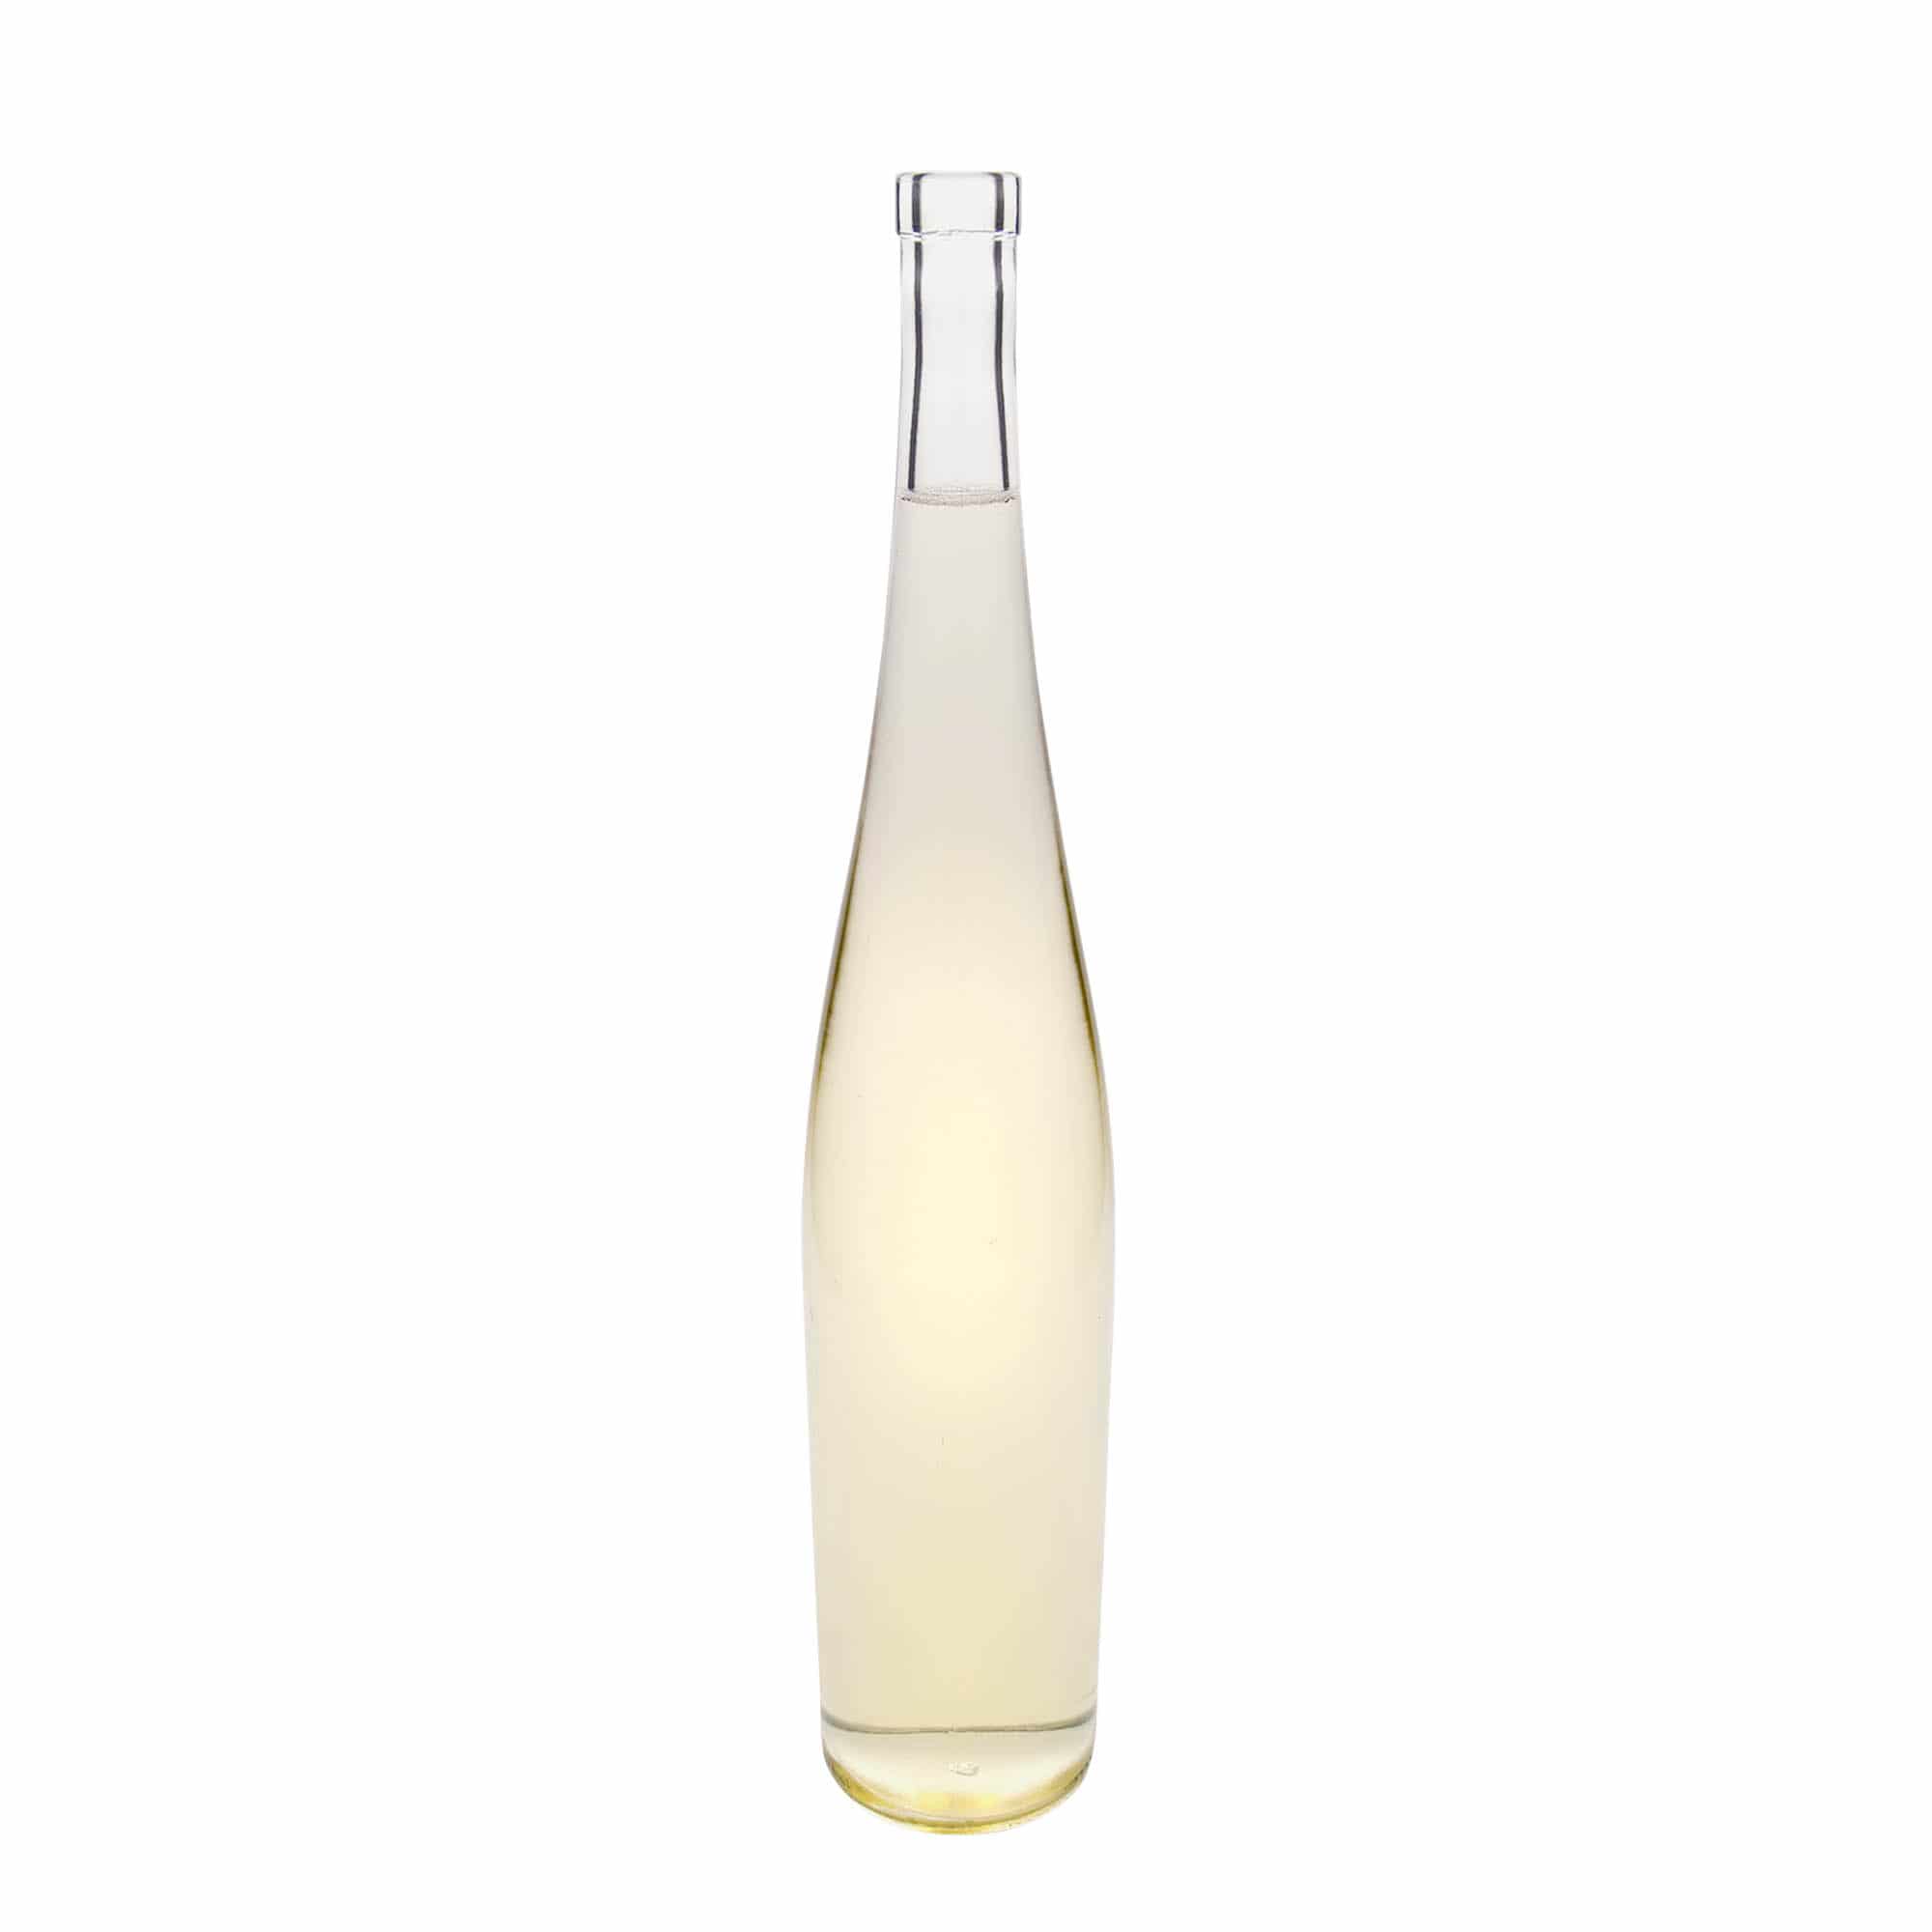 1,500 ml glass bottle 'Weinschlegel', closure: cork